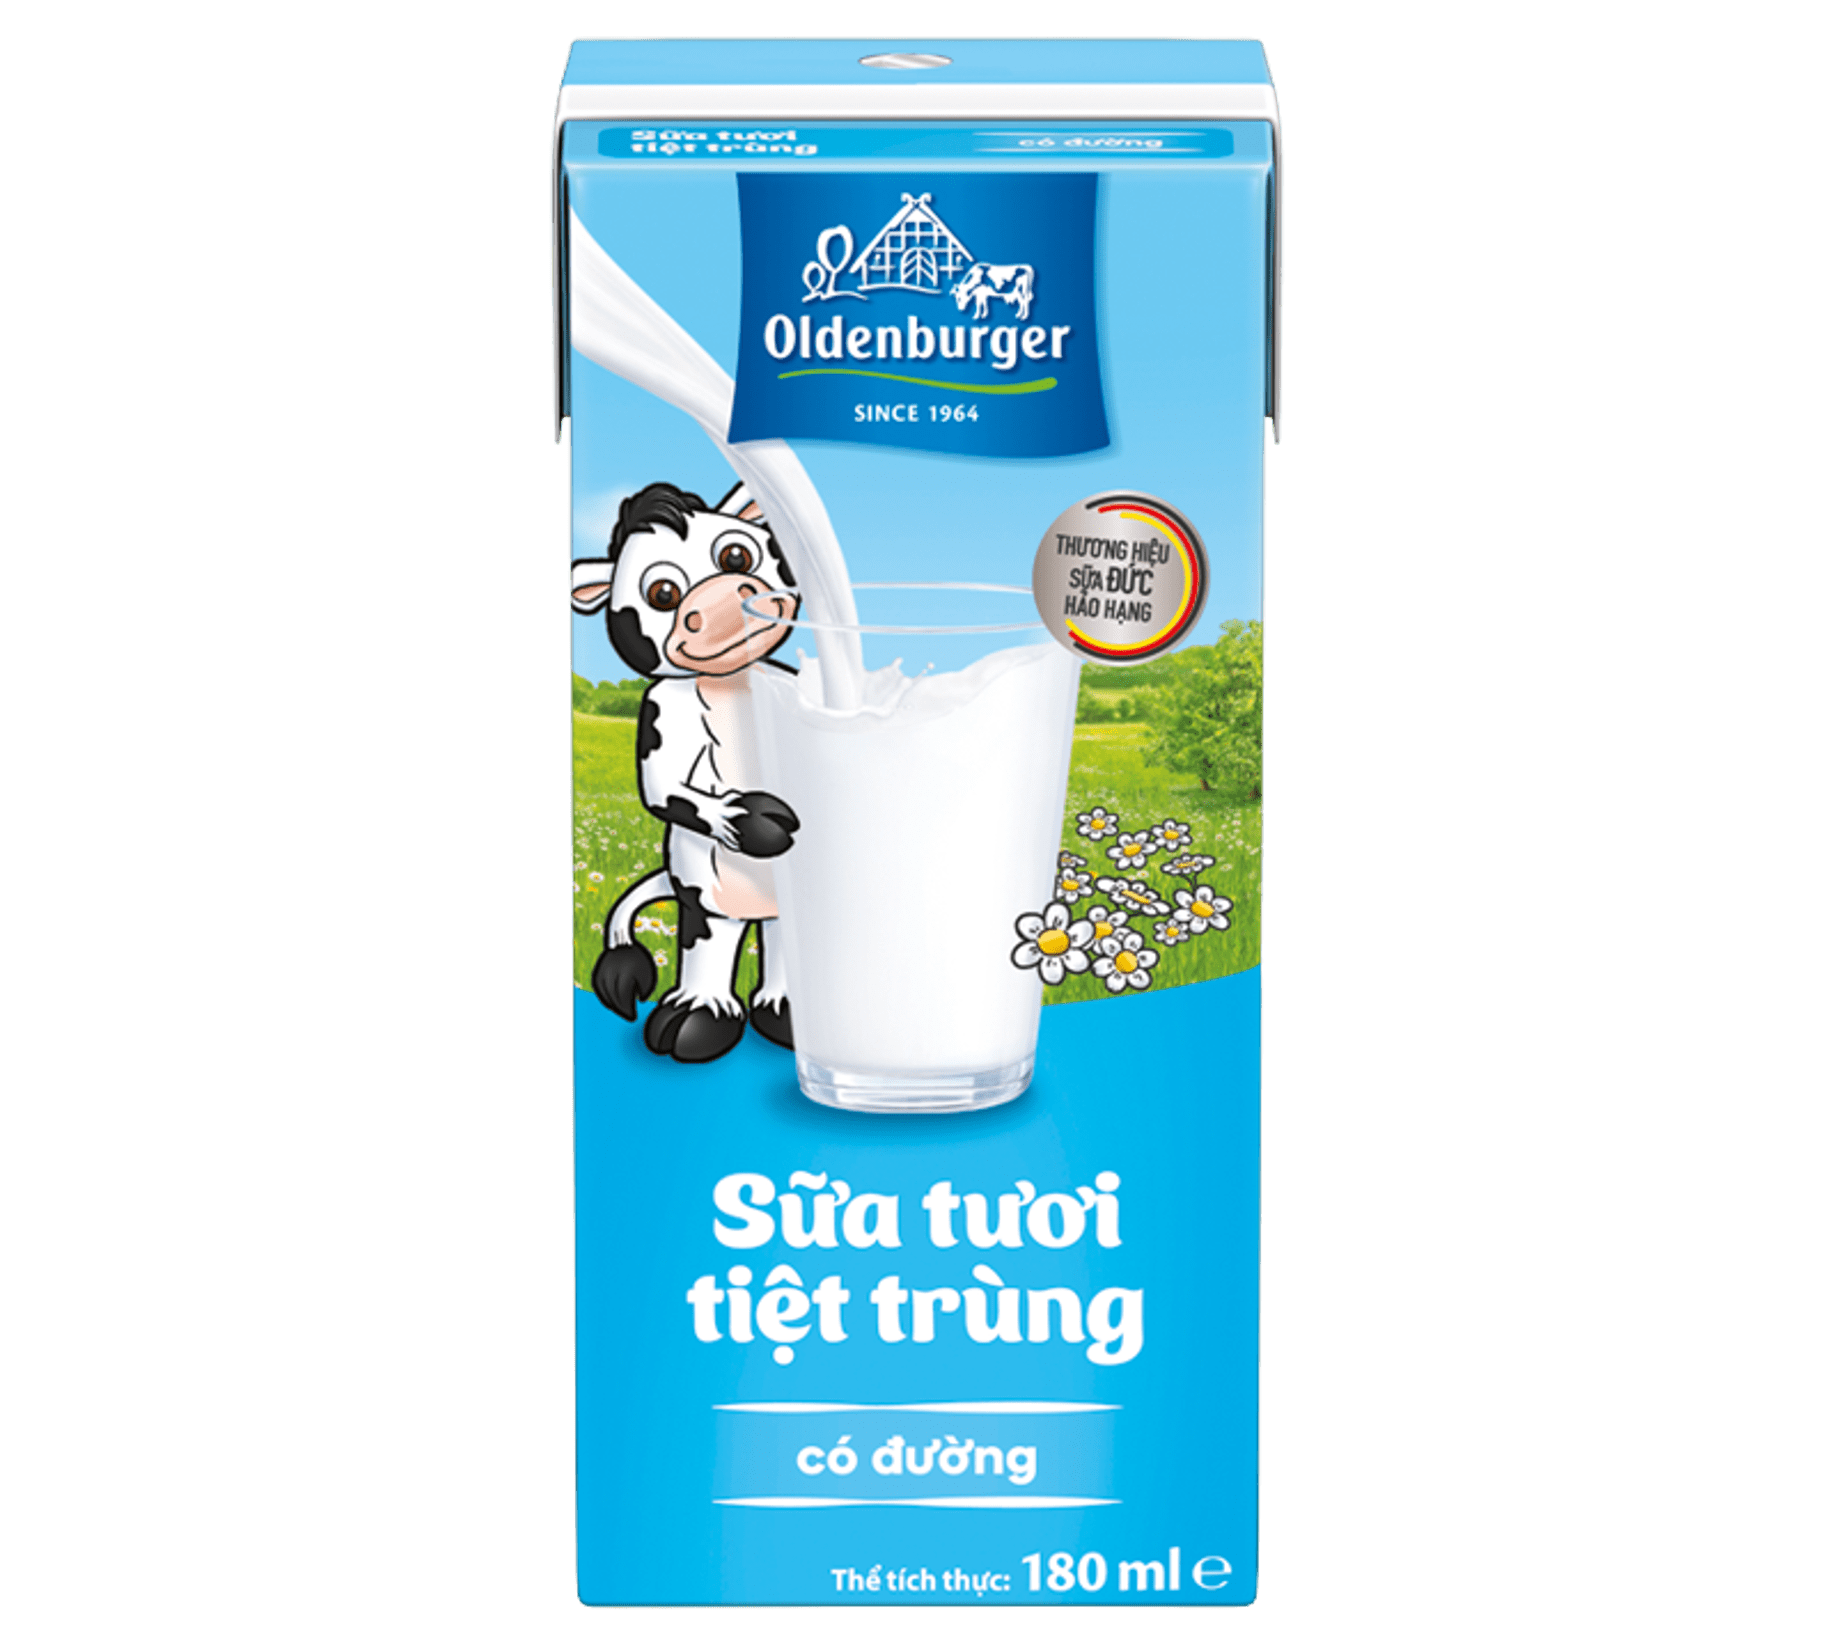 Sữa tươi tiệt trùng có đường hiệu Oldenburger - Thùng 48 hộp x 180ml/hộp